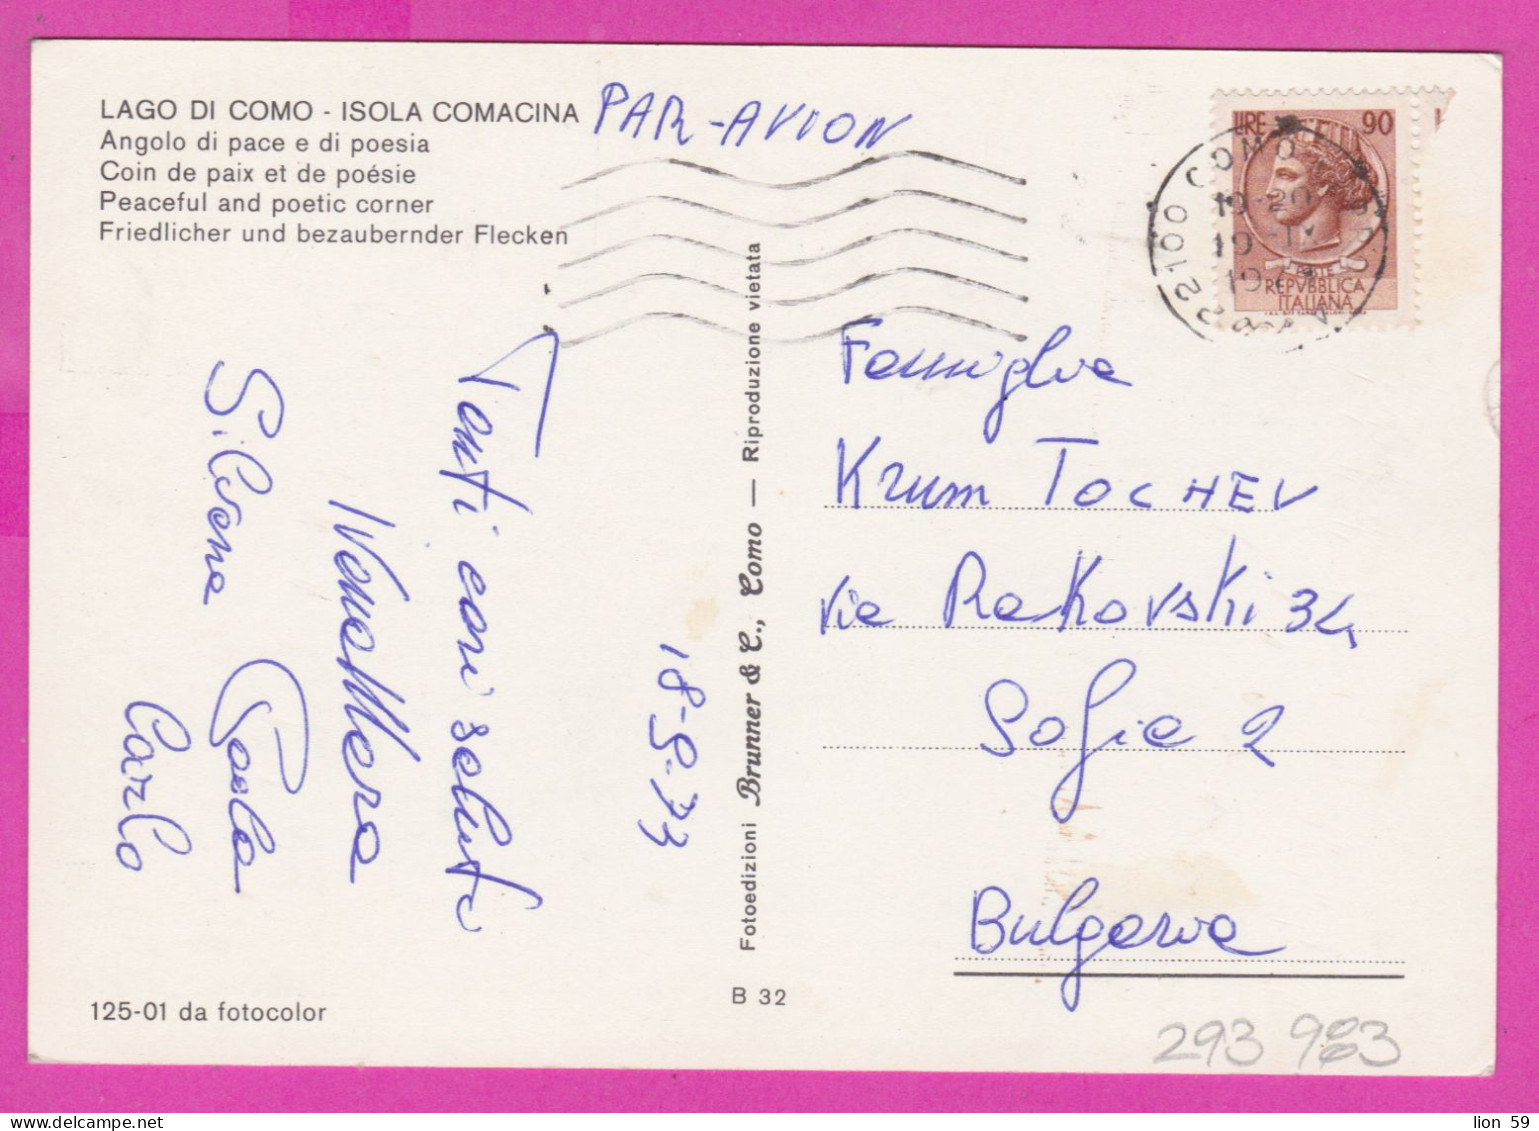 293983 / Italy - LAGO DI COMO - Isola Comacina , Angolo Di Pace E Di Poesia PC 1973 USED 90 L Coin Of Syracuse - 1971-80: Marcophilia